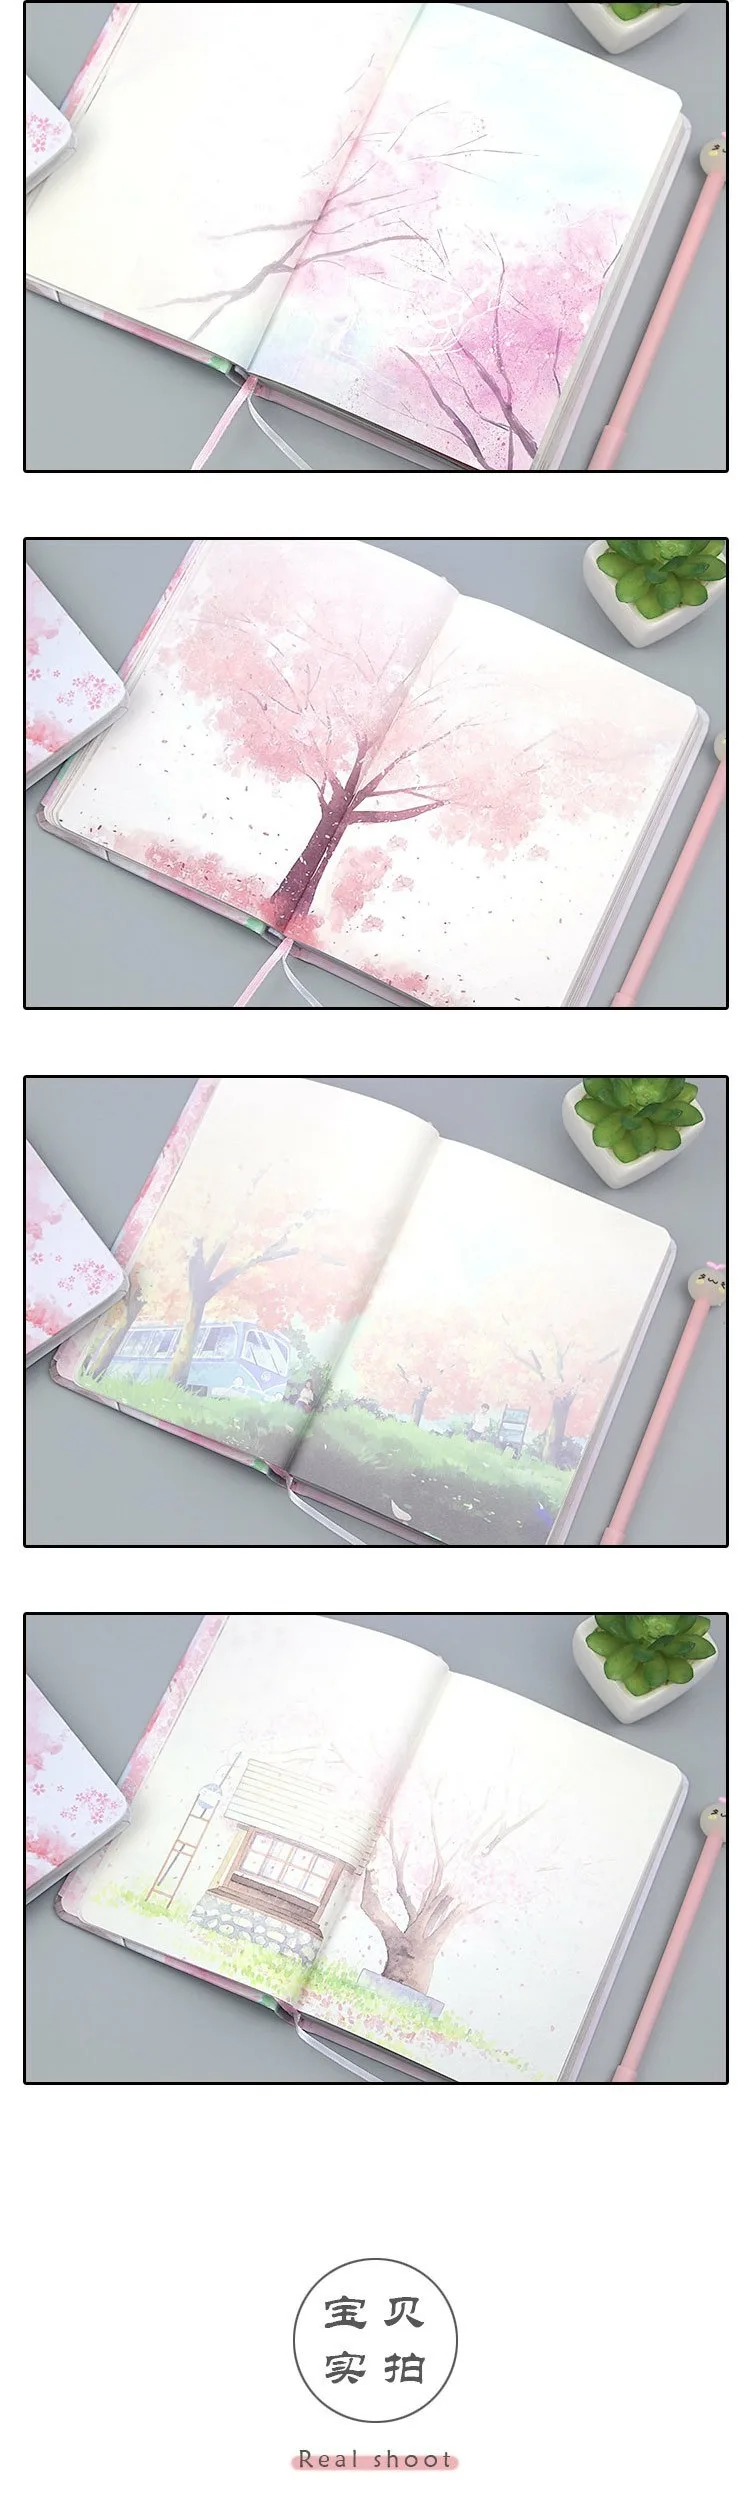 JIANWU sakura записная книжка для девочек цветной внутренний планировщик страниц diy Дневник bullet journal канцелярские принадлежности SCOOLE милые офисные принадлежности